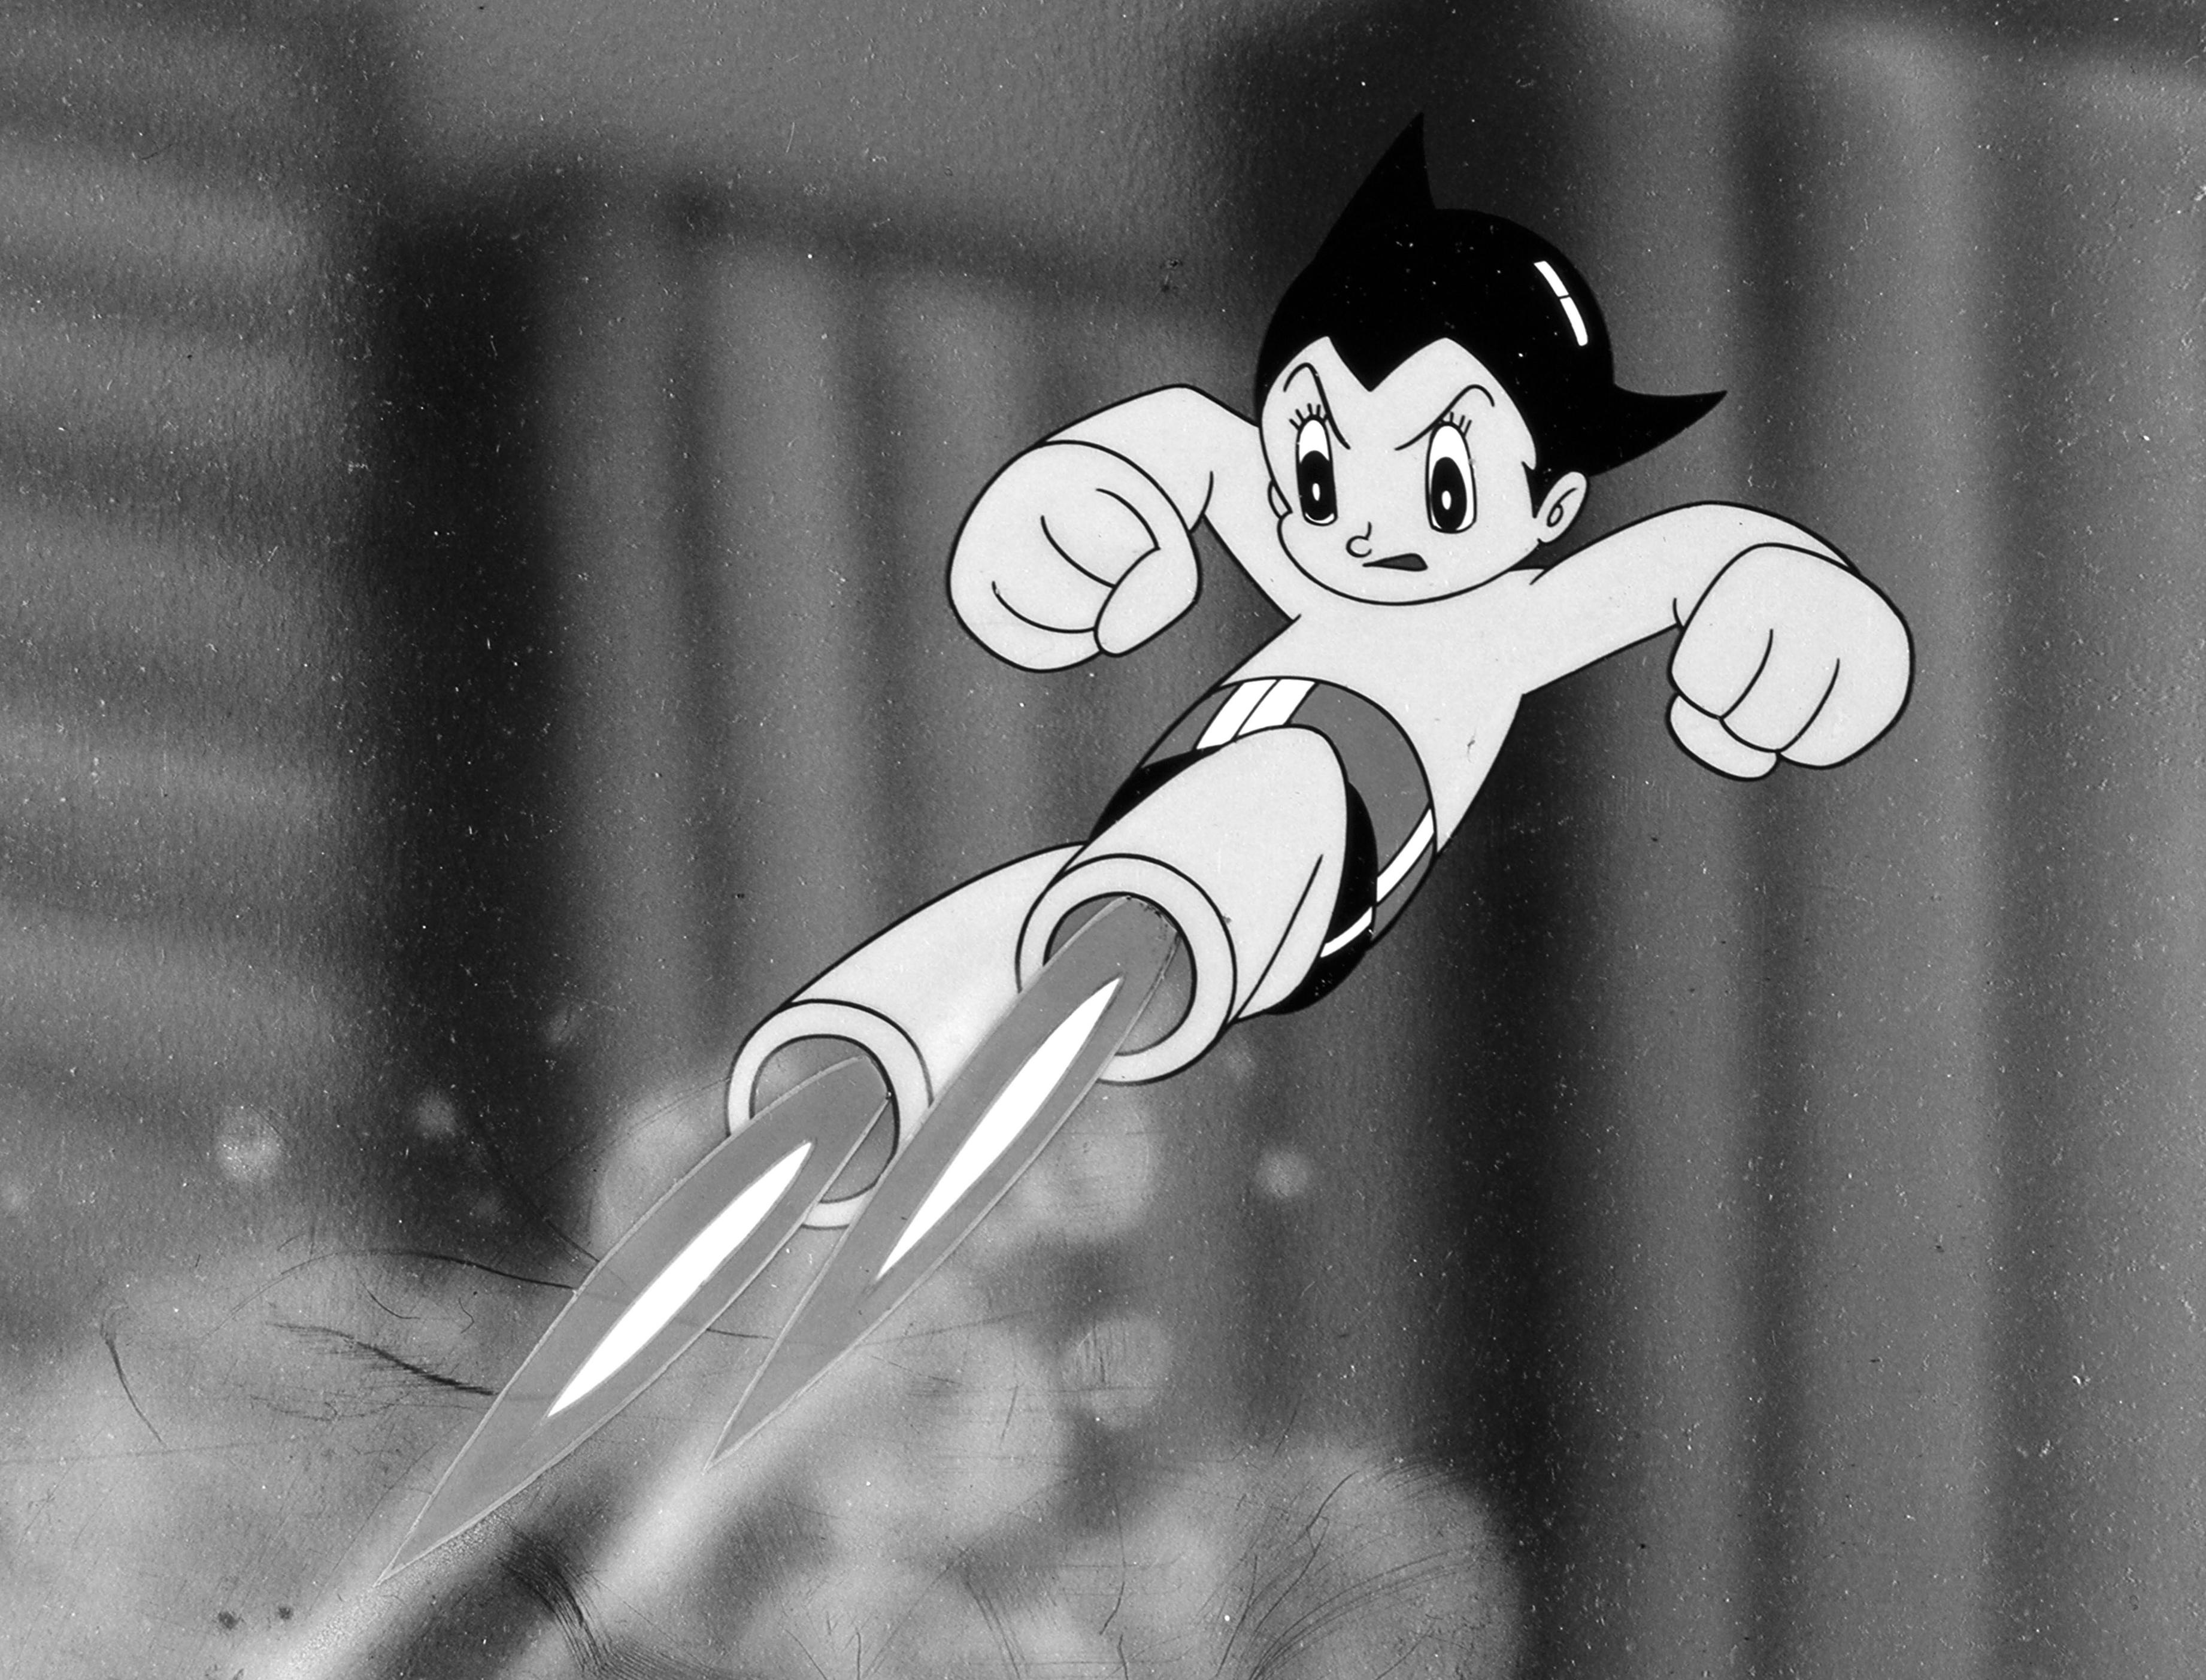 Still from 'Astro Boy' animation in 1963, fulfilment of Tezuka's dream | KYODO